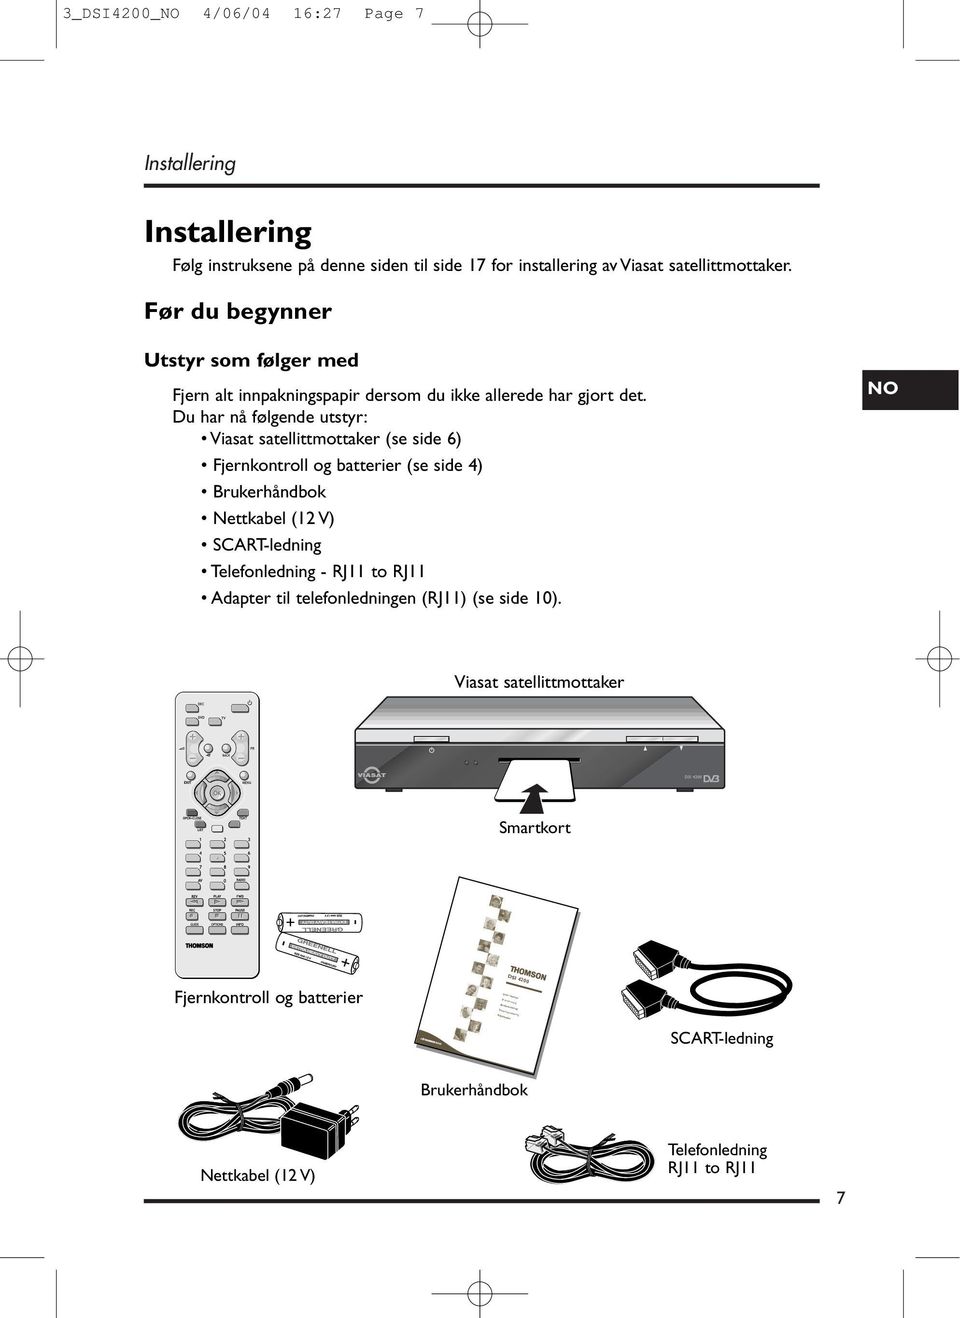 Du har nå følgende utstyr: Viasat satellittmottaker (se side 6) Fjernkontroll og batterier (se side 4) Brukerhåndbok Nettkabel (12 V) SCART-ledning Telefonledning - RJ11 to